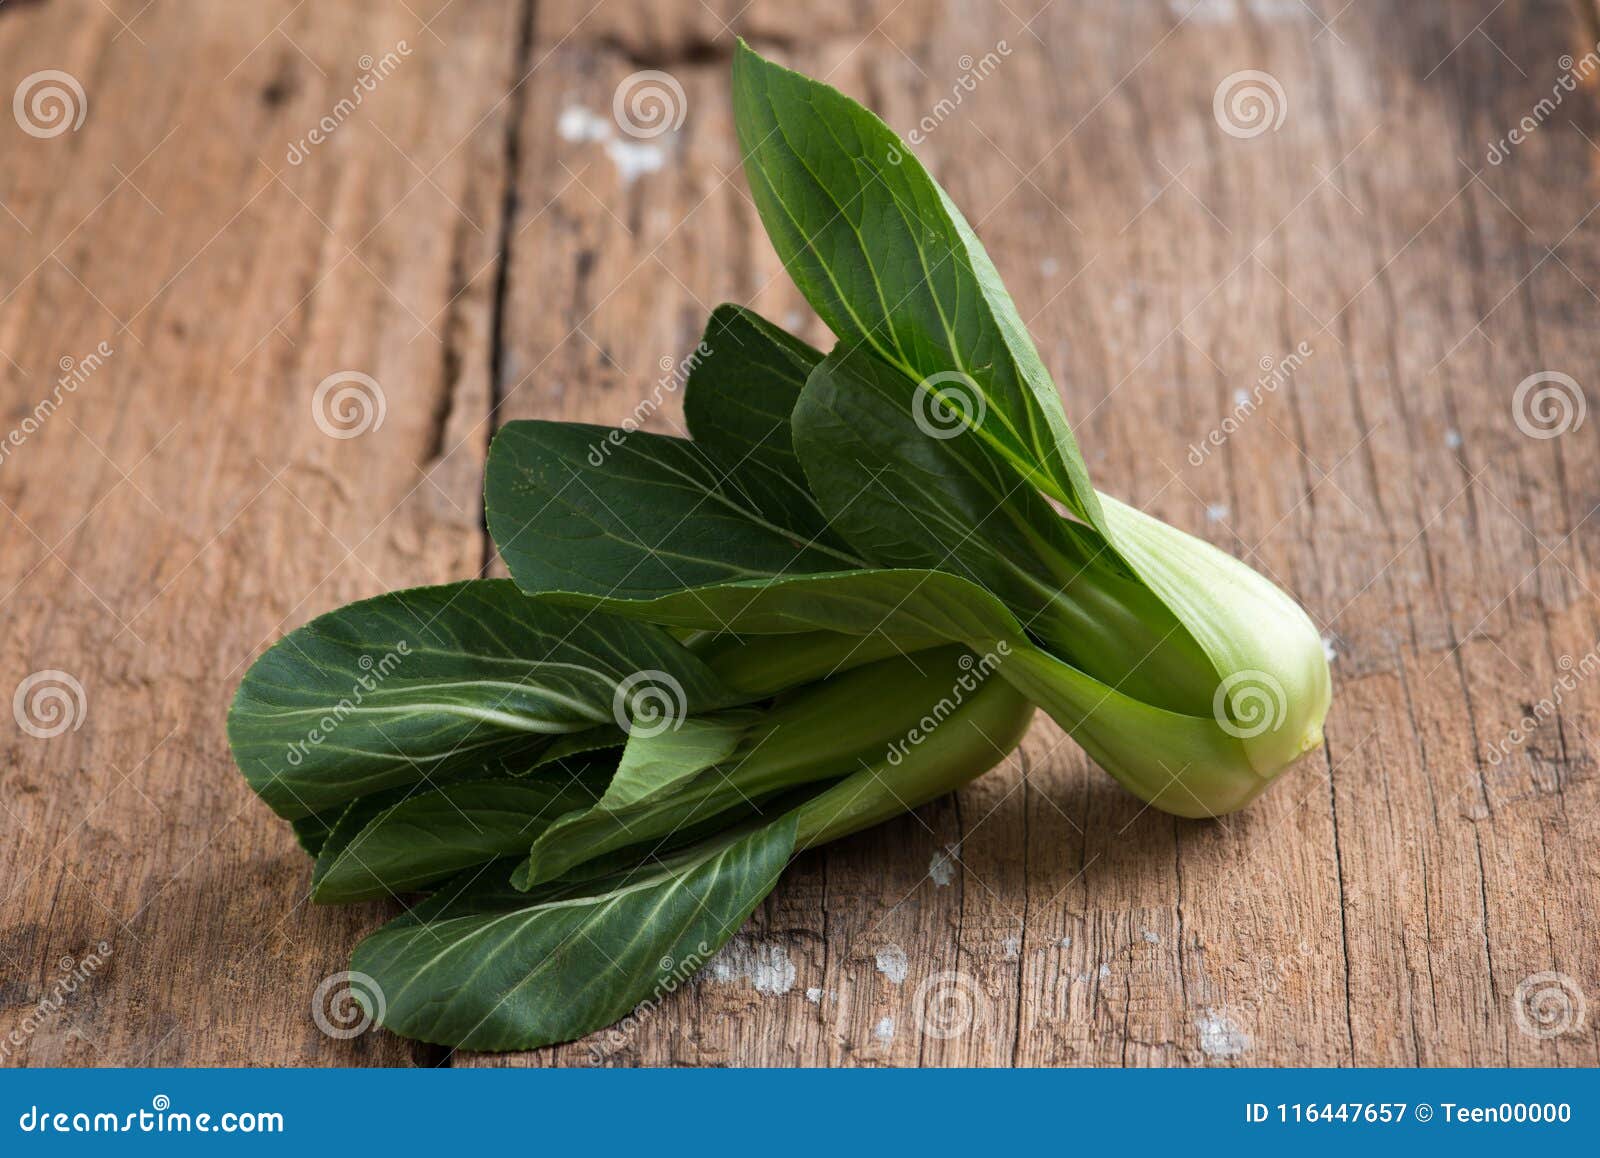 pak choy, fresh chinese cabbage on wood background